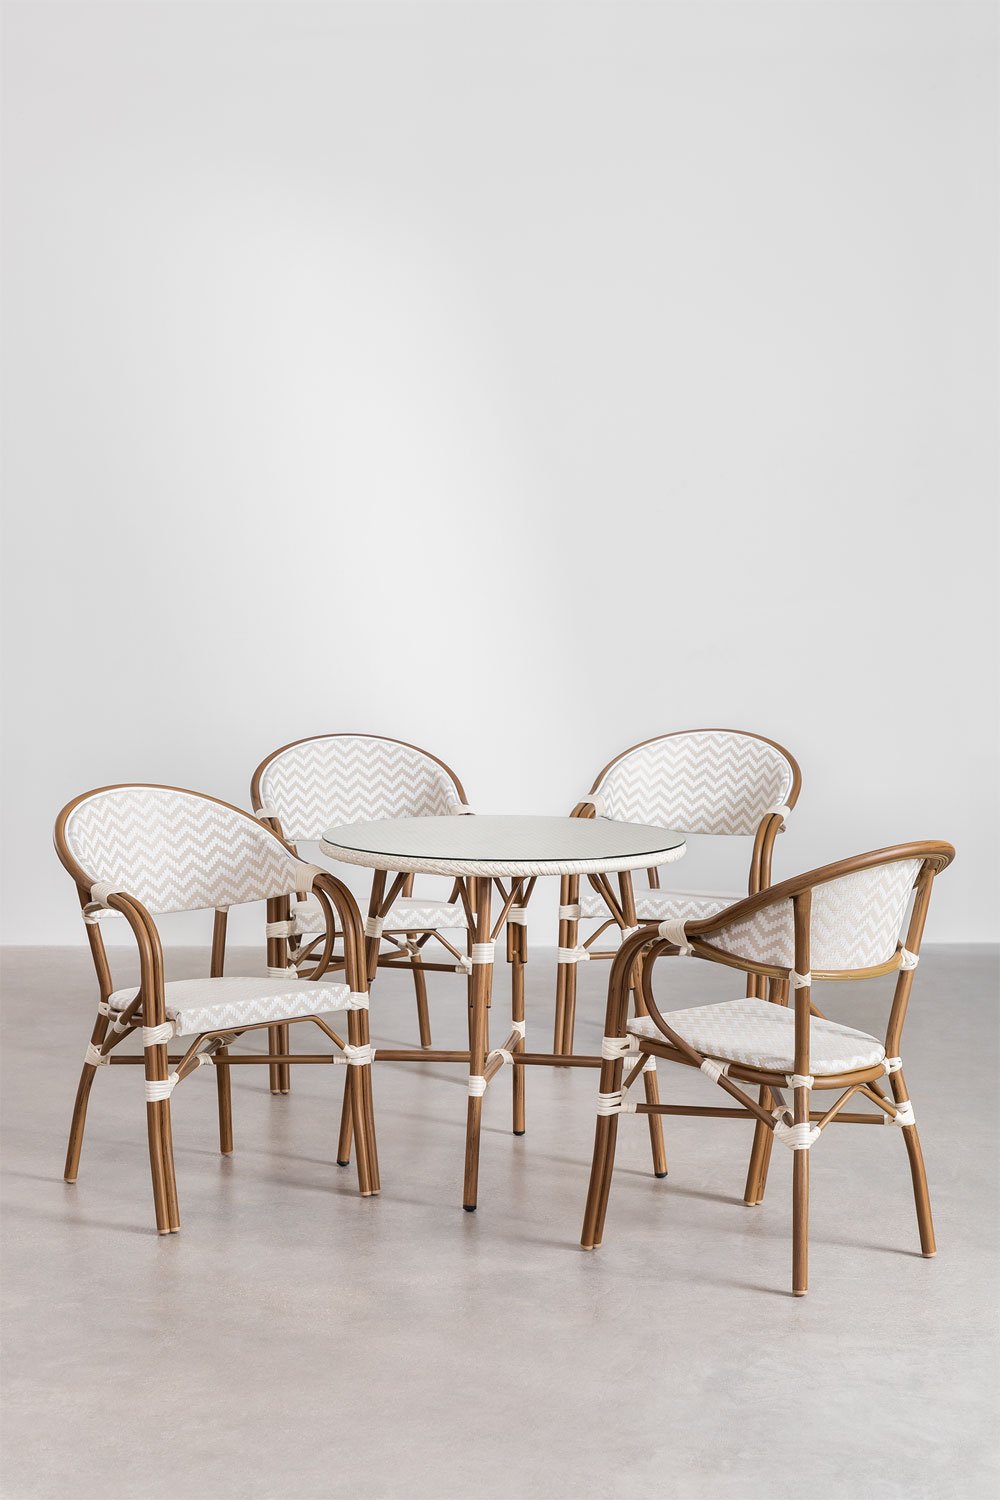 Set van ronde tafel (Ø80 cm) en 4 stapelbare eetkamerstoelen met armleuningen in aluminium Brielle Bistro-design, galerij beeld 1